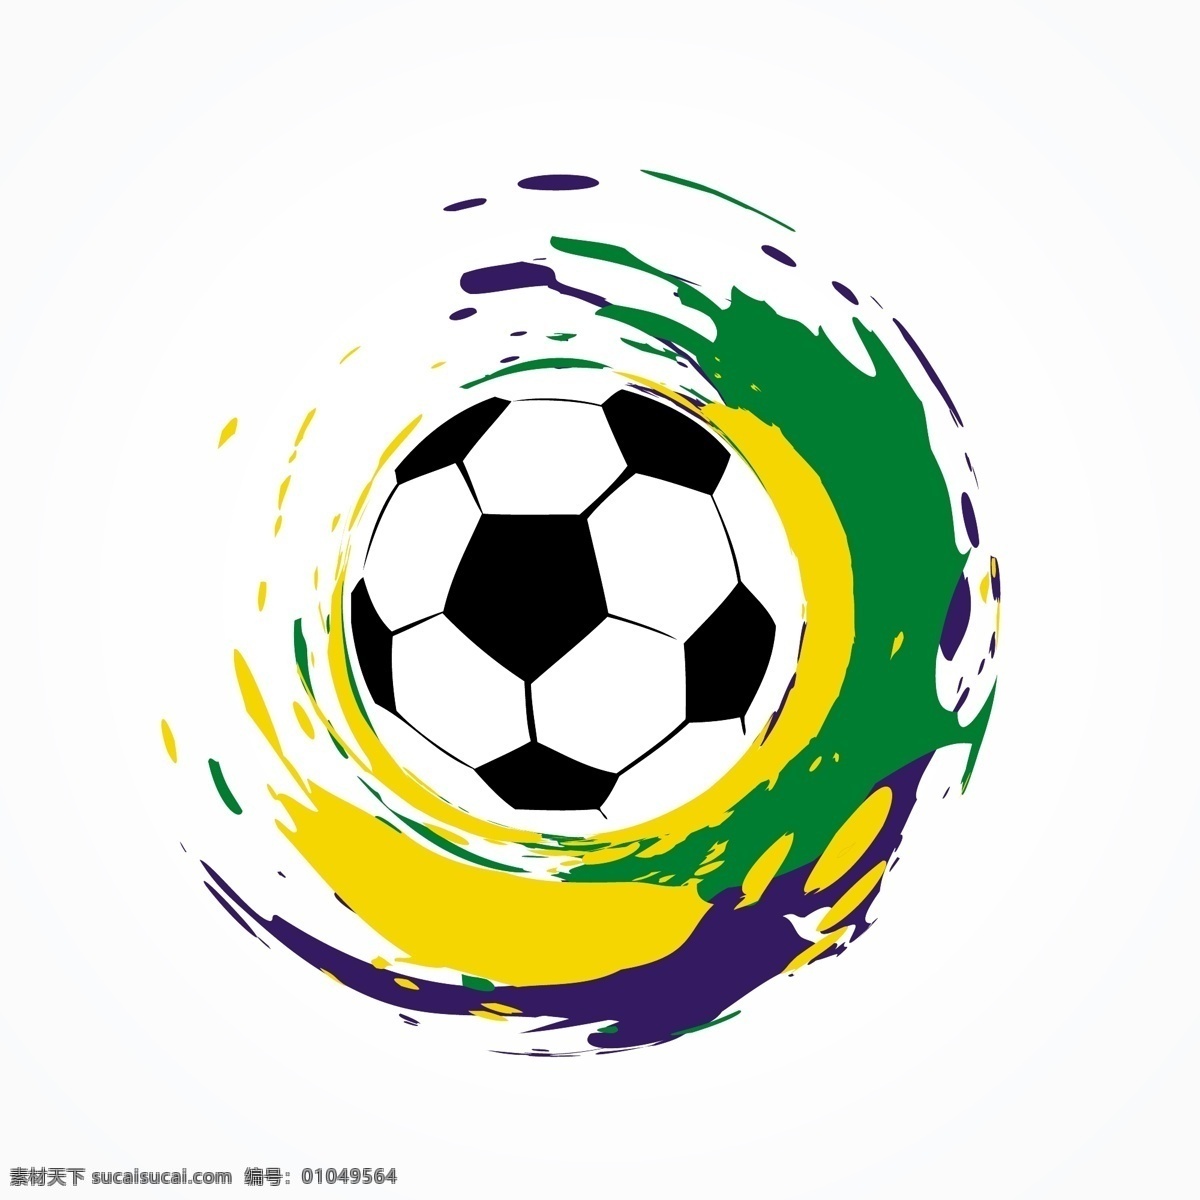 足球海报背景 2018 世界杯 足球赛 海报 足球海报 足球背景 足球比赛 足球素材 足球 足球运动 体育 休闲娱乐体育 文化艺术 体育运动